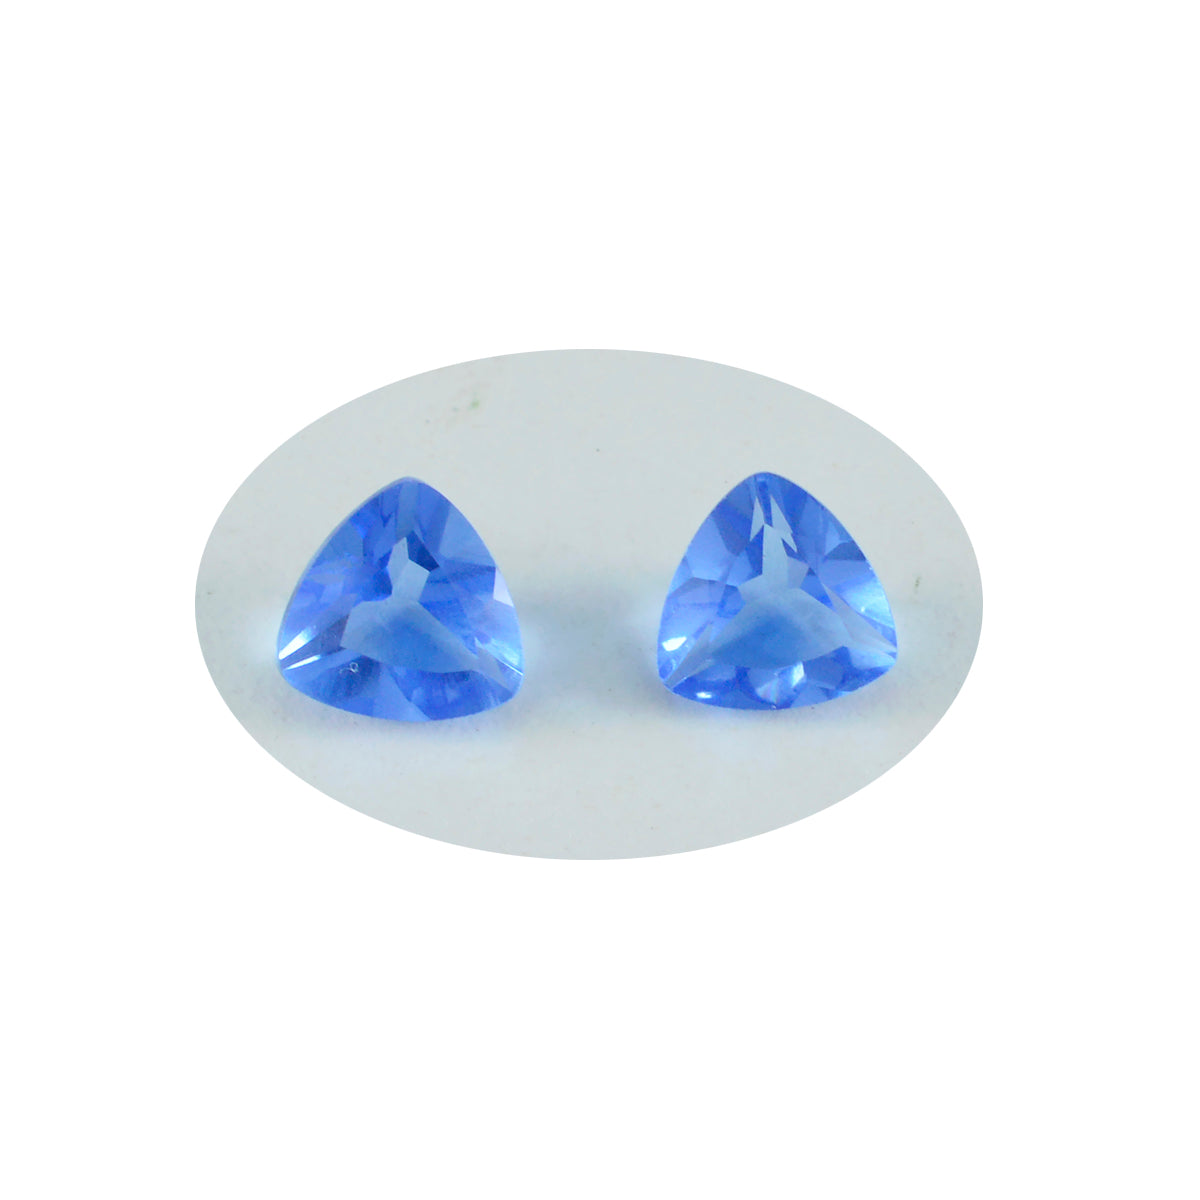 Riyogems 1 Stück blauer Saphir, CZ, facettiert, 11 x 11 mm, Billionenform, fantastischer Qualitätsstein